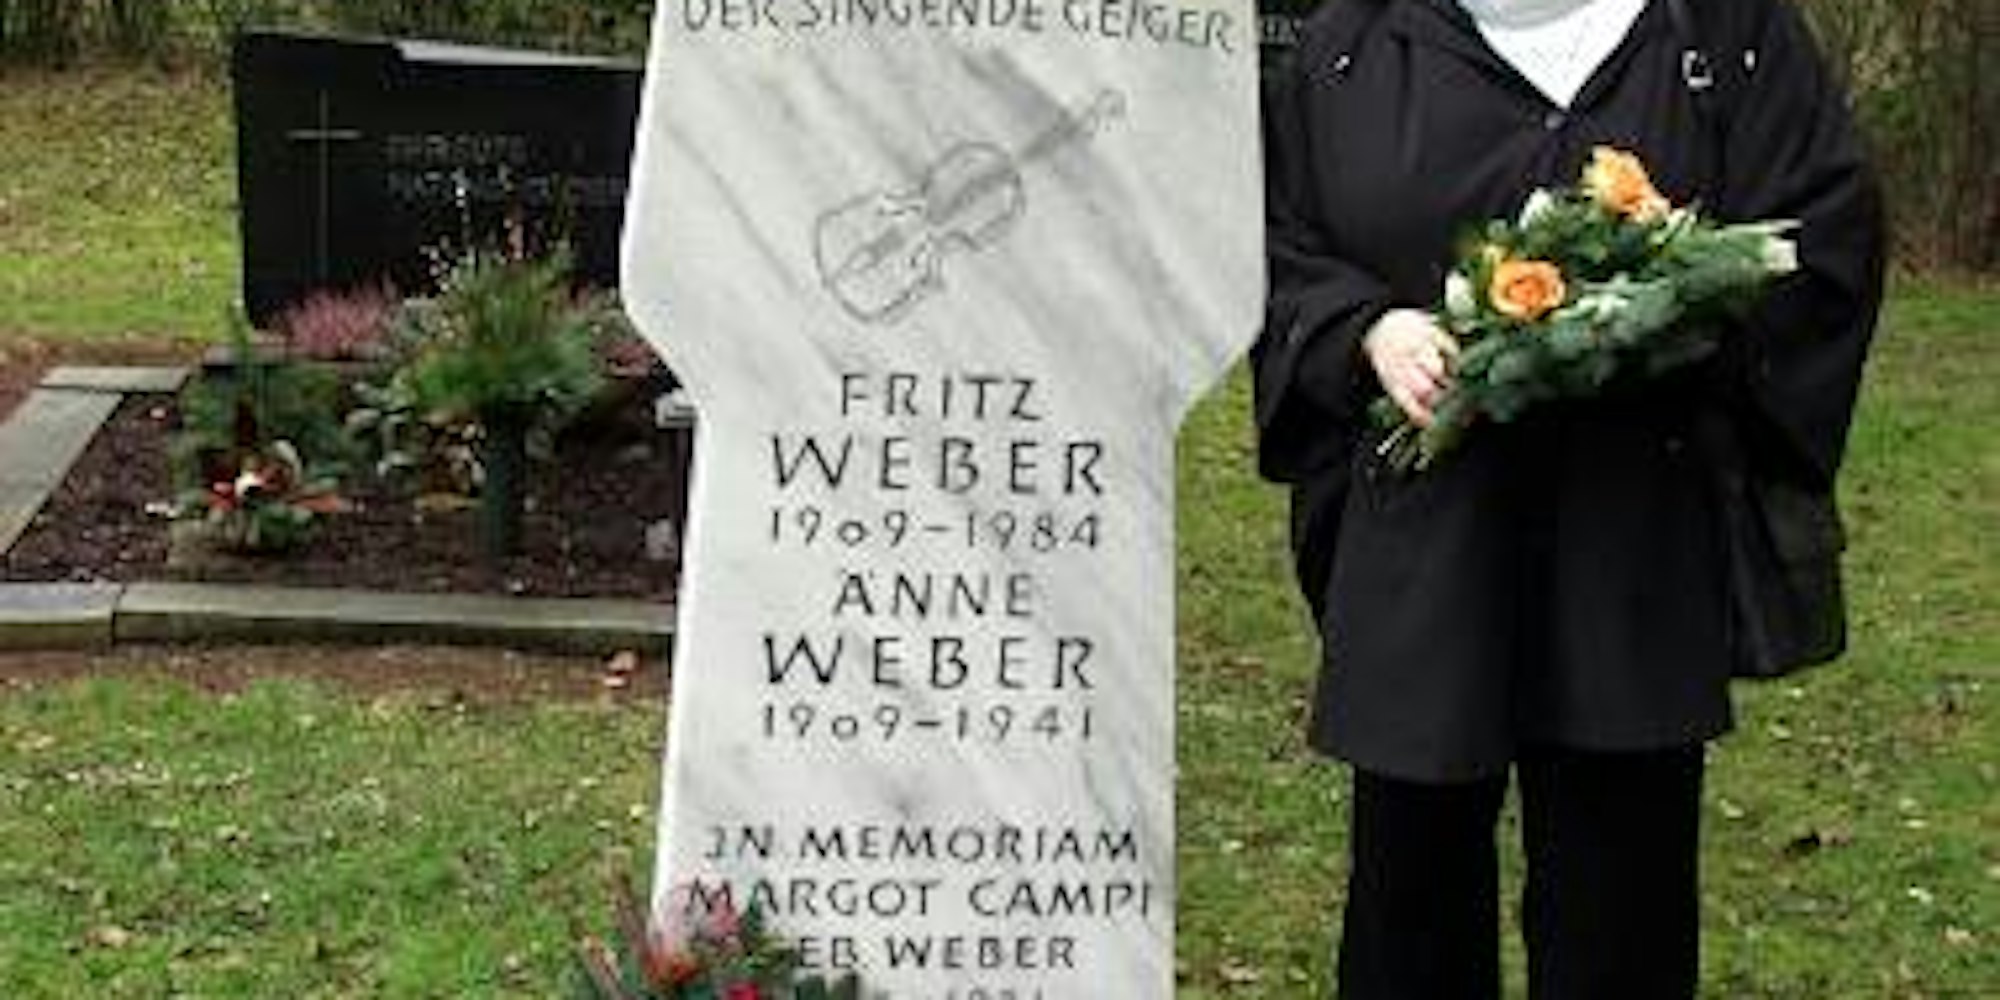 1984, kurz nach seinem 75. Geburtstag verstarb Fritz Weber. Tochter Dagmar Kuhlmann singt einige seiner Lieder heute noch gerne. (Bild: Ramme)